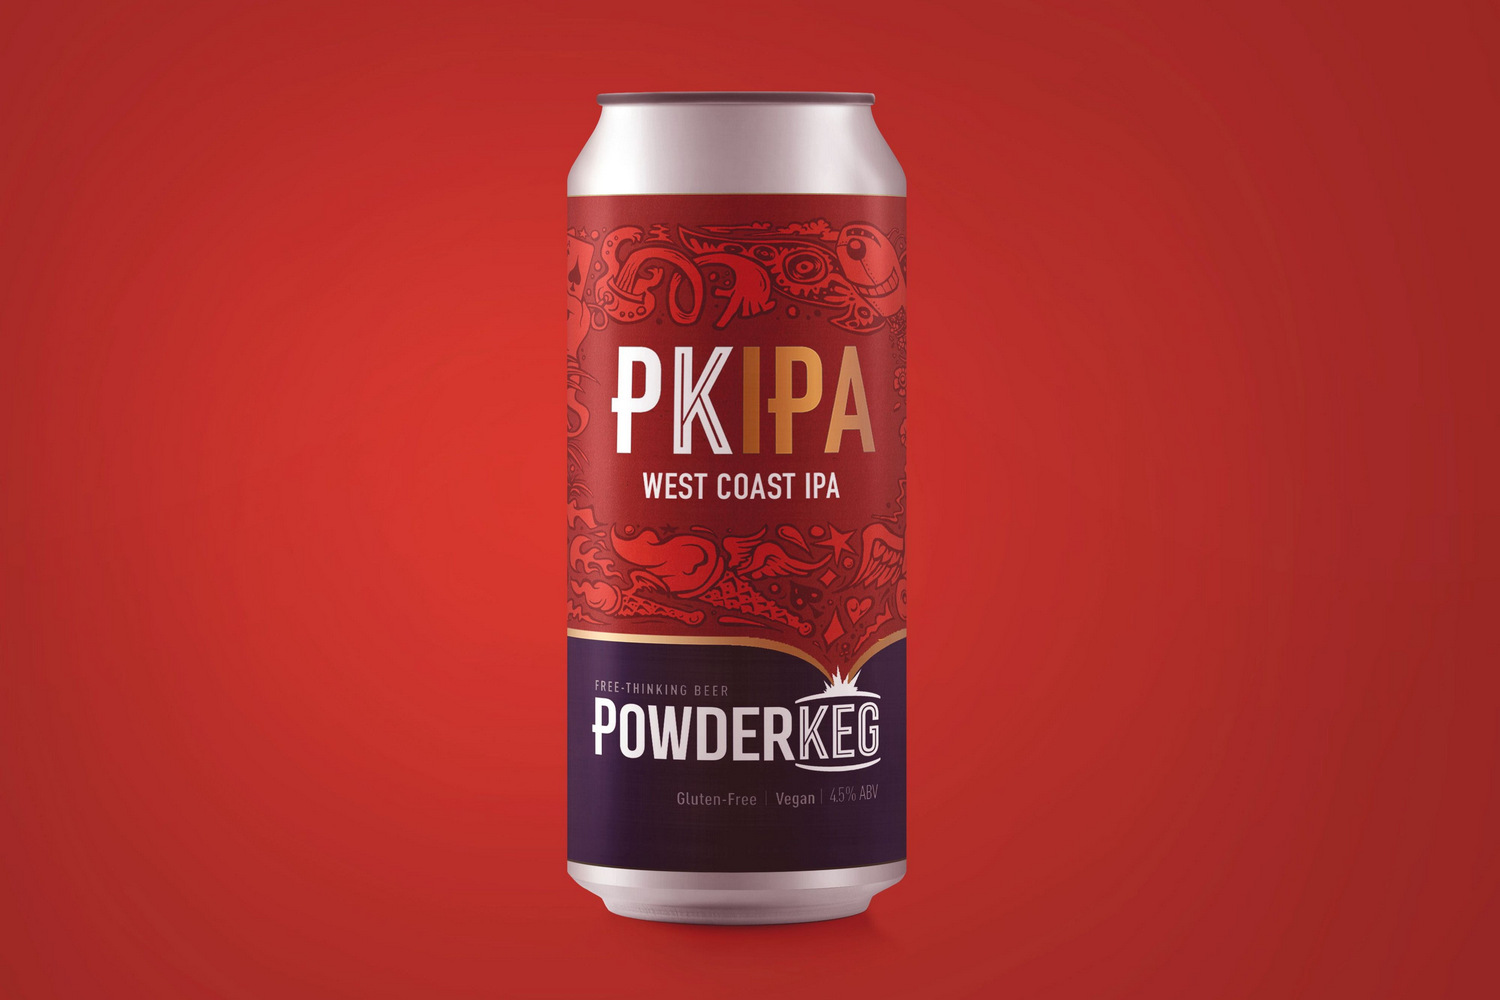 Powderkeg випускає нову версію популярного PKIPA